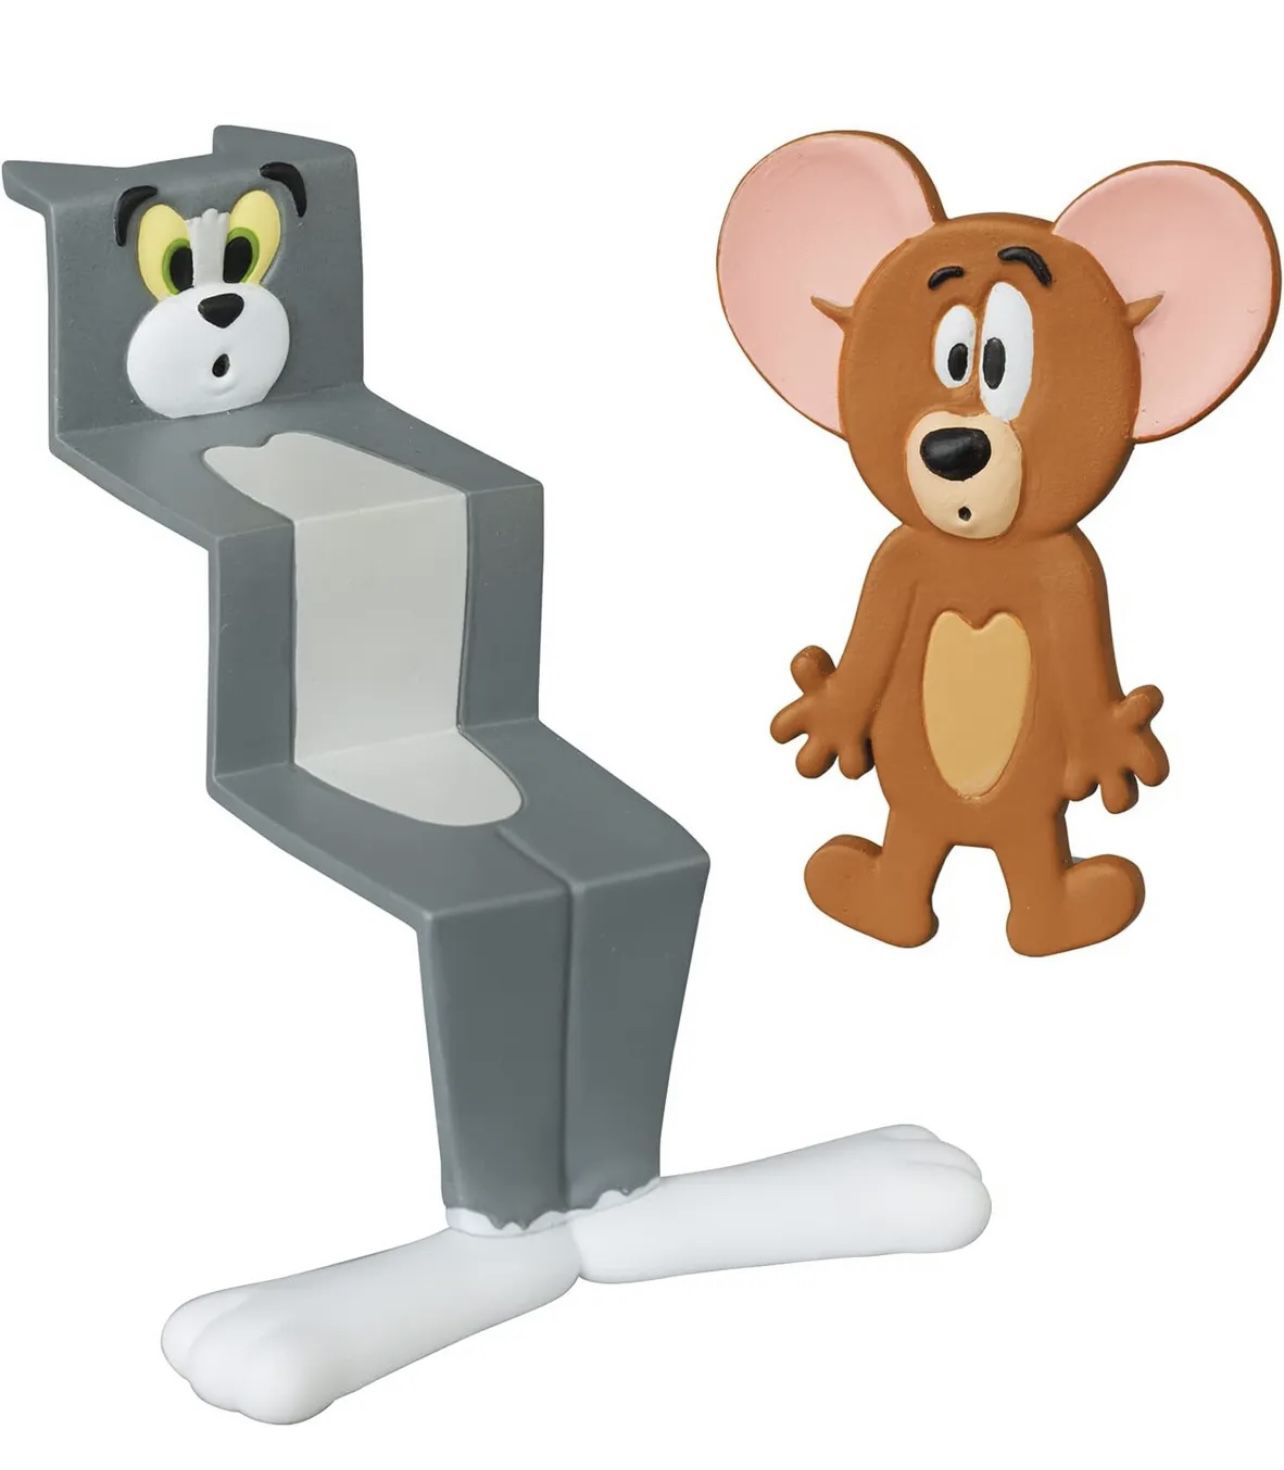 Tom & Jerry Figurine UDF - Sealed New